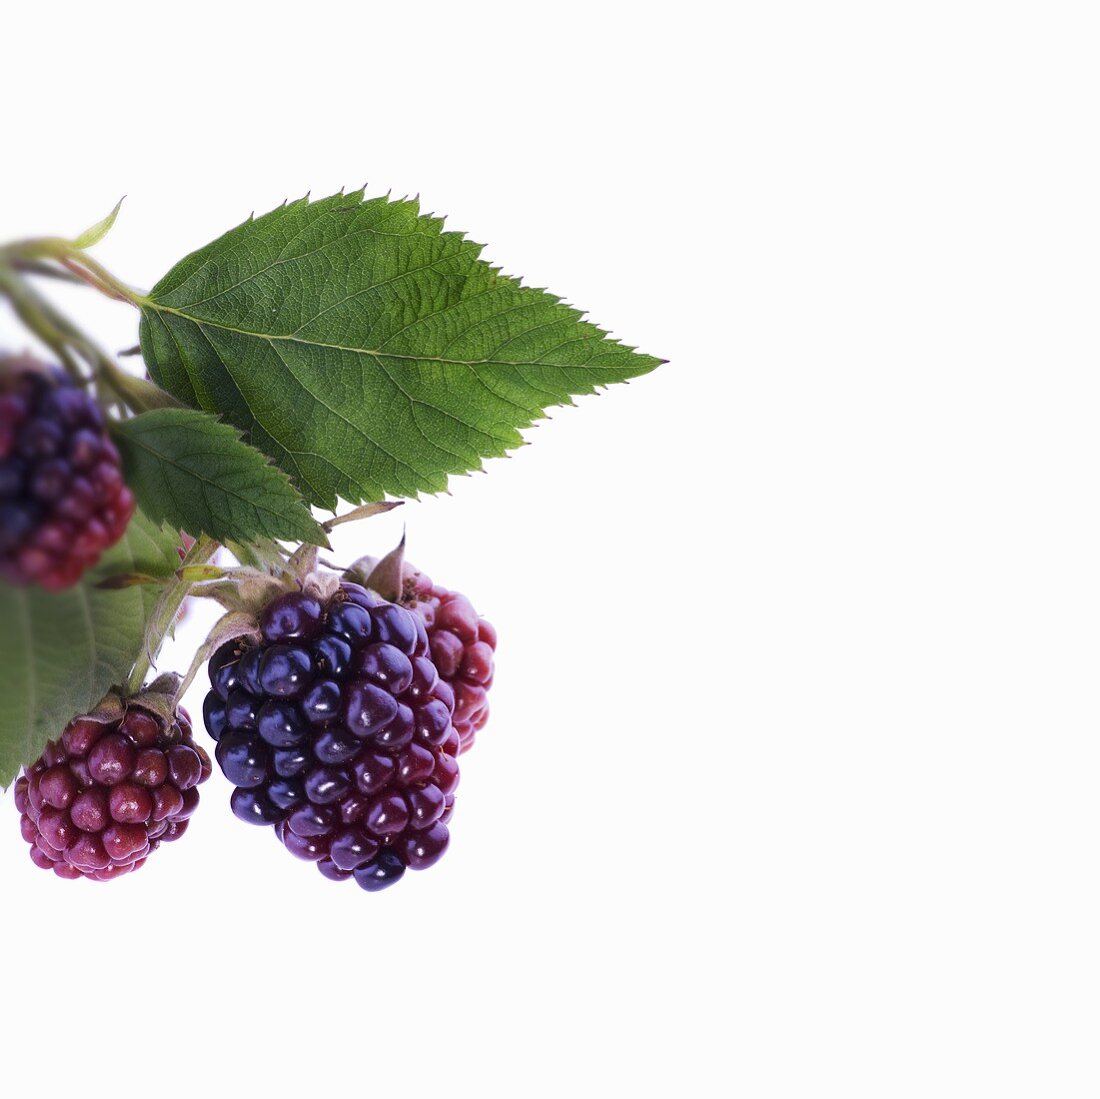 Unripe blackberries with leaves